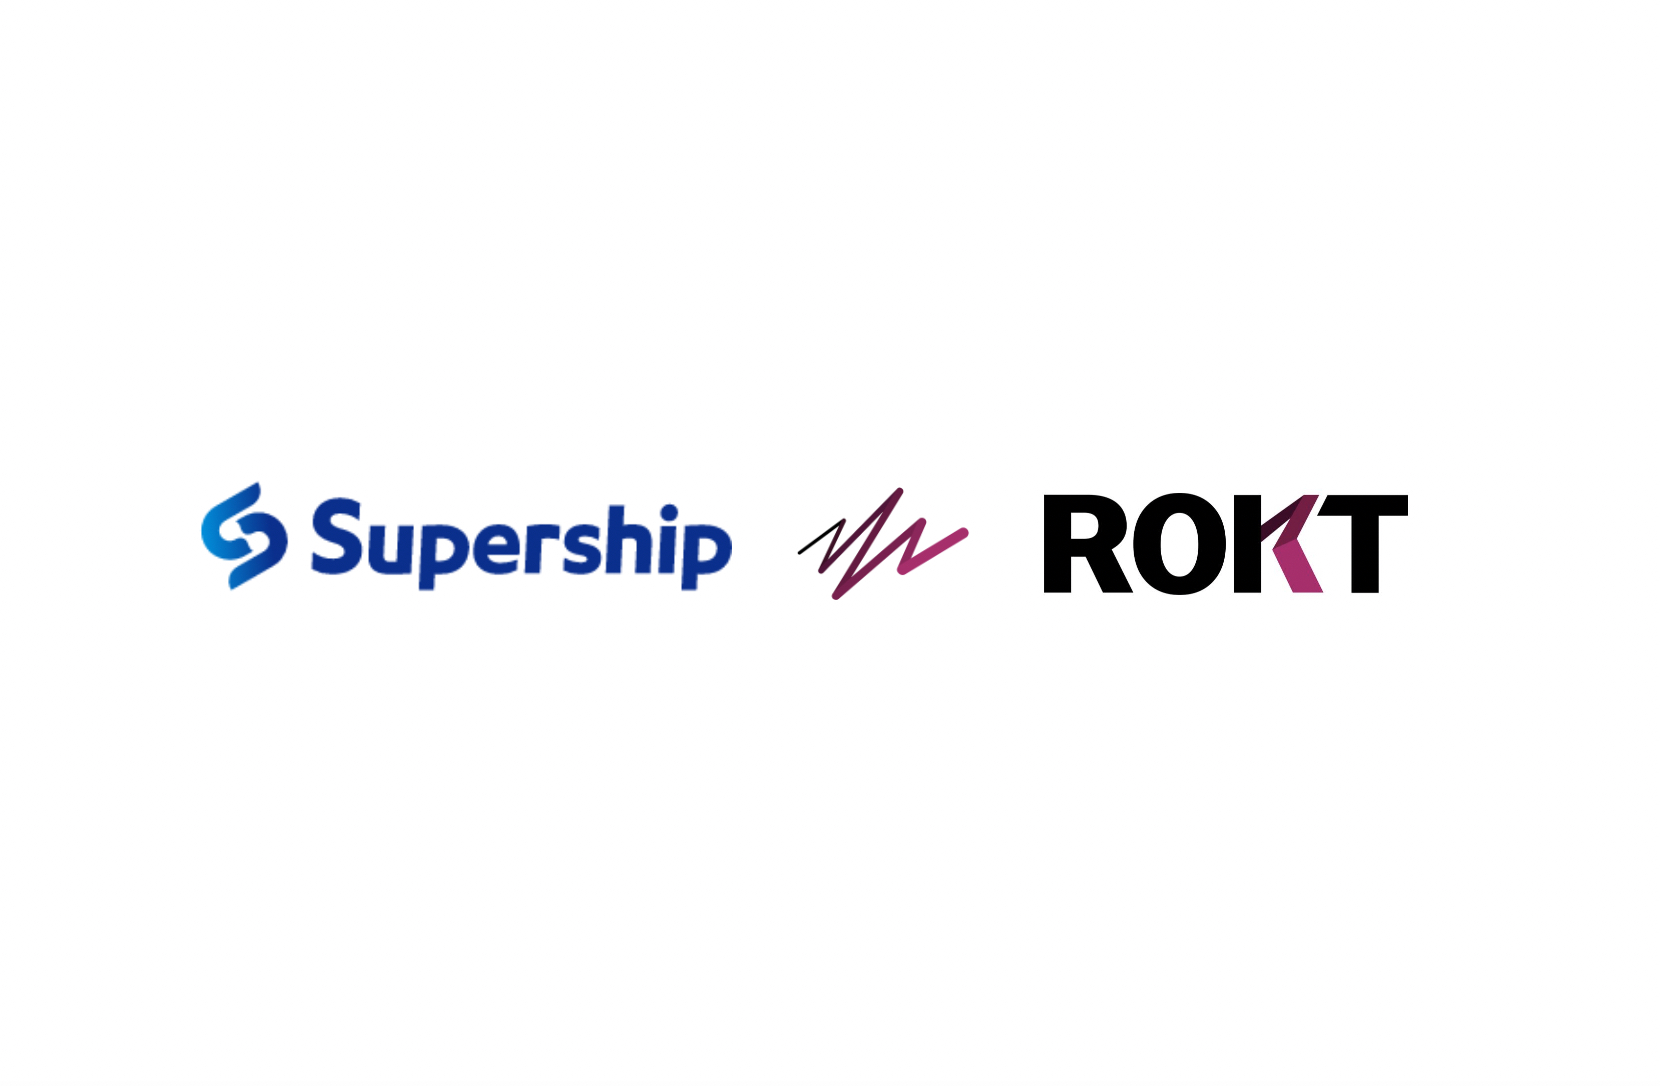 eコマースマーケティングテクノロジーを提供するRokt、Supership株式会社と戦略的パートナーシップを締結